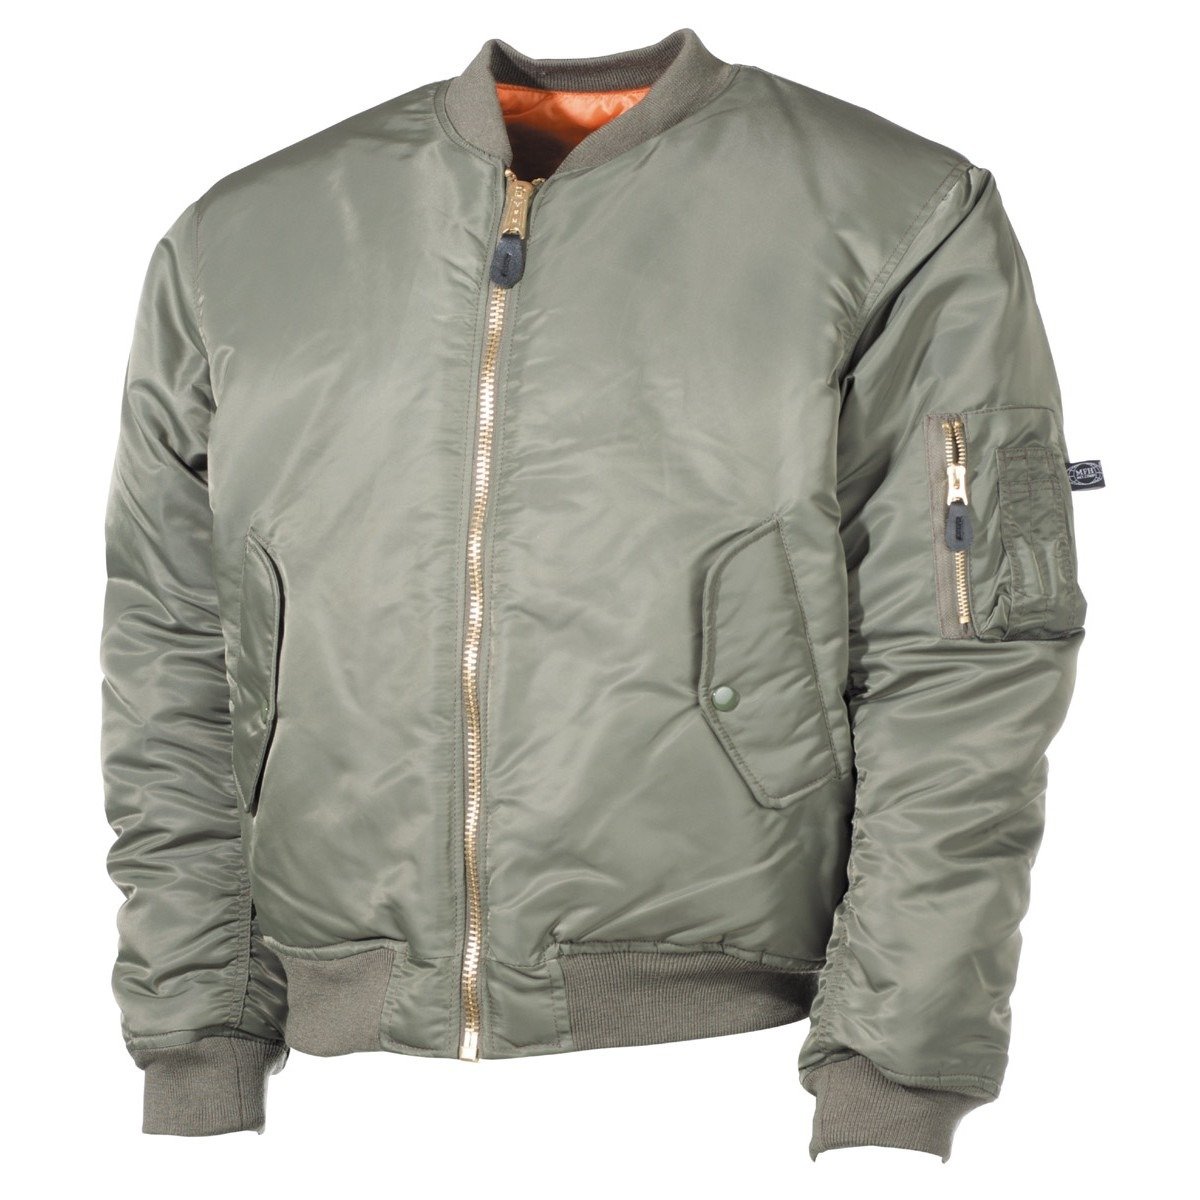 MFH MA1 bomber pilot jacket, olive | Apparel \ Jackets \ Flight Jackets ...